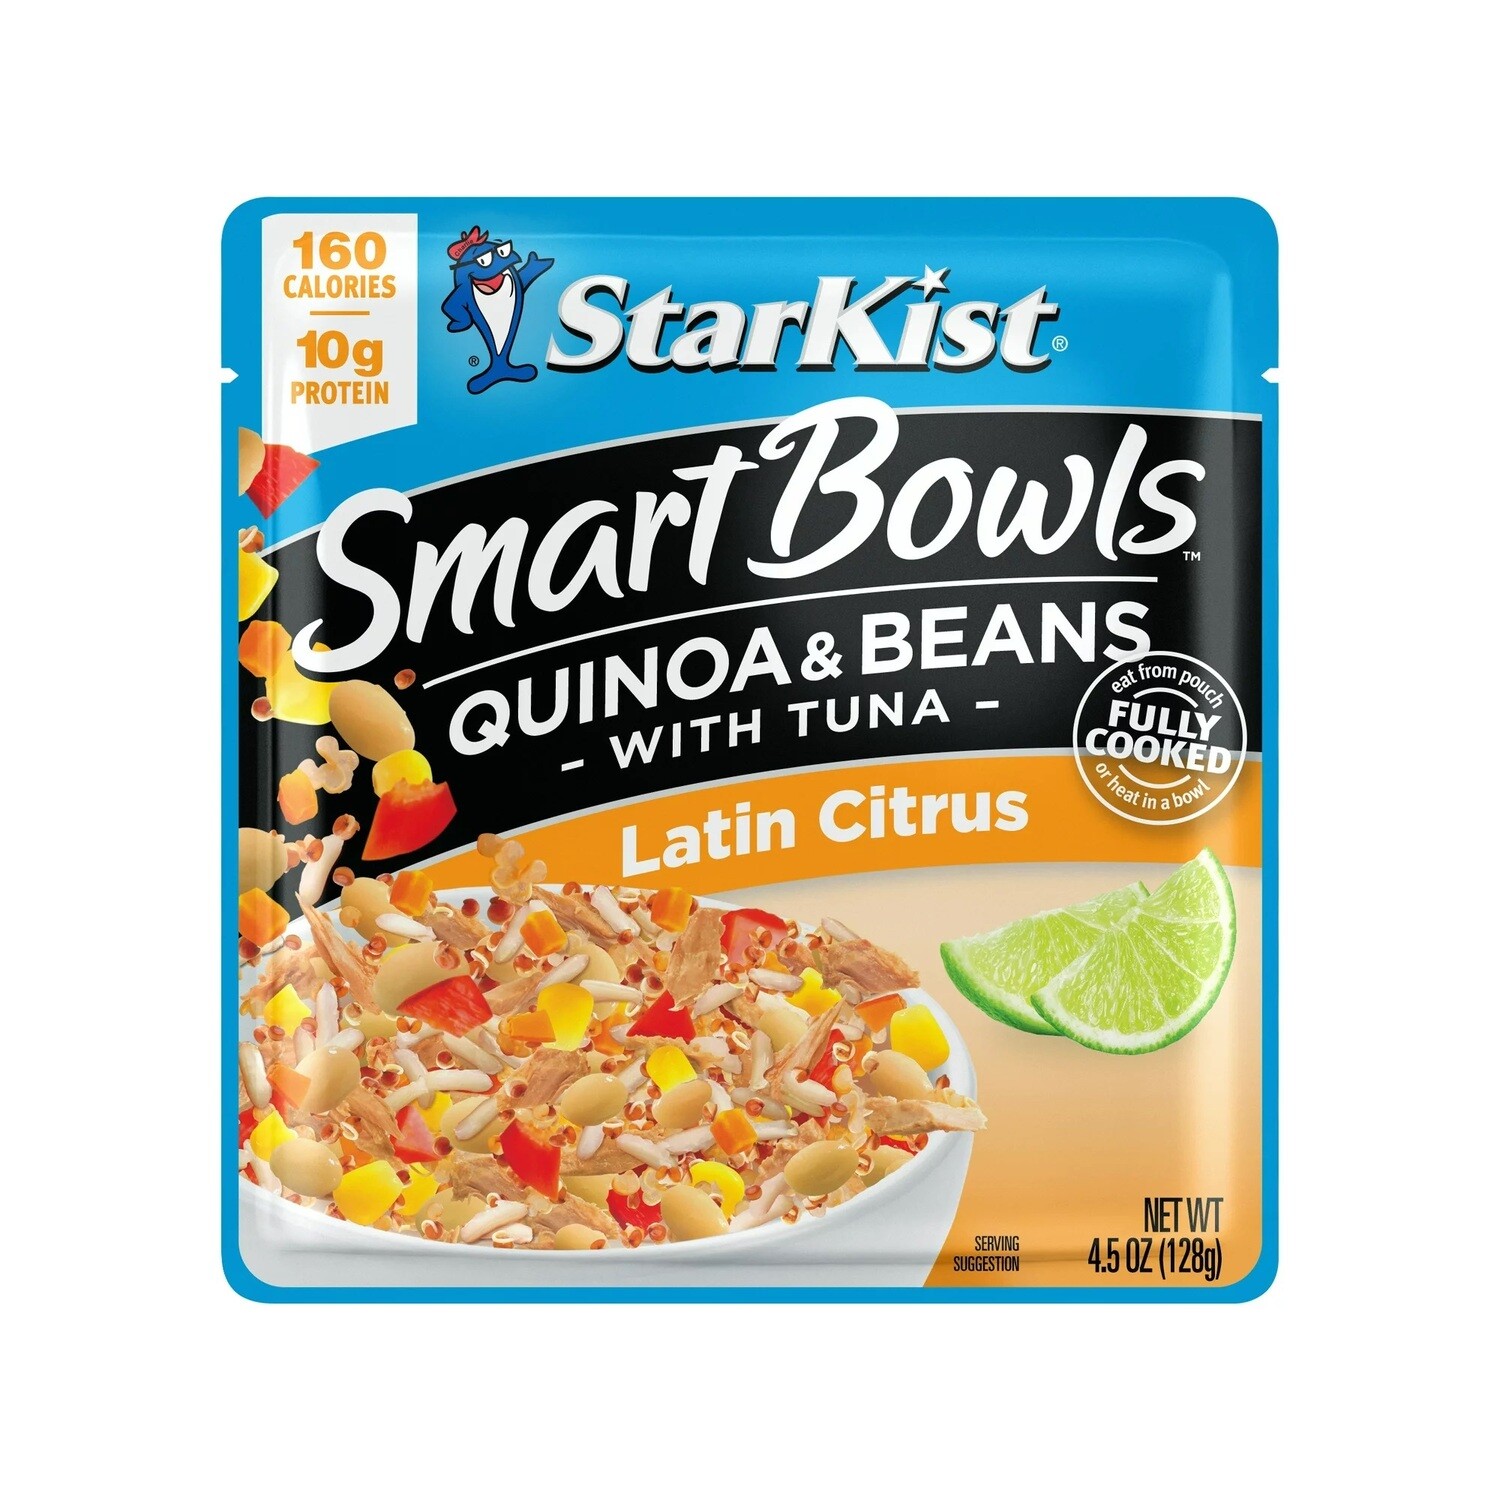 Starkist Smart Bowls - Latin Citrus Quinoa & Beans